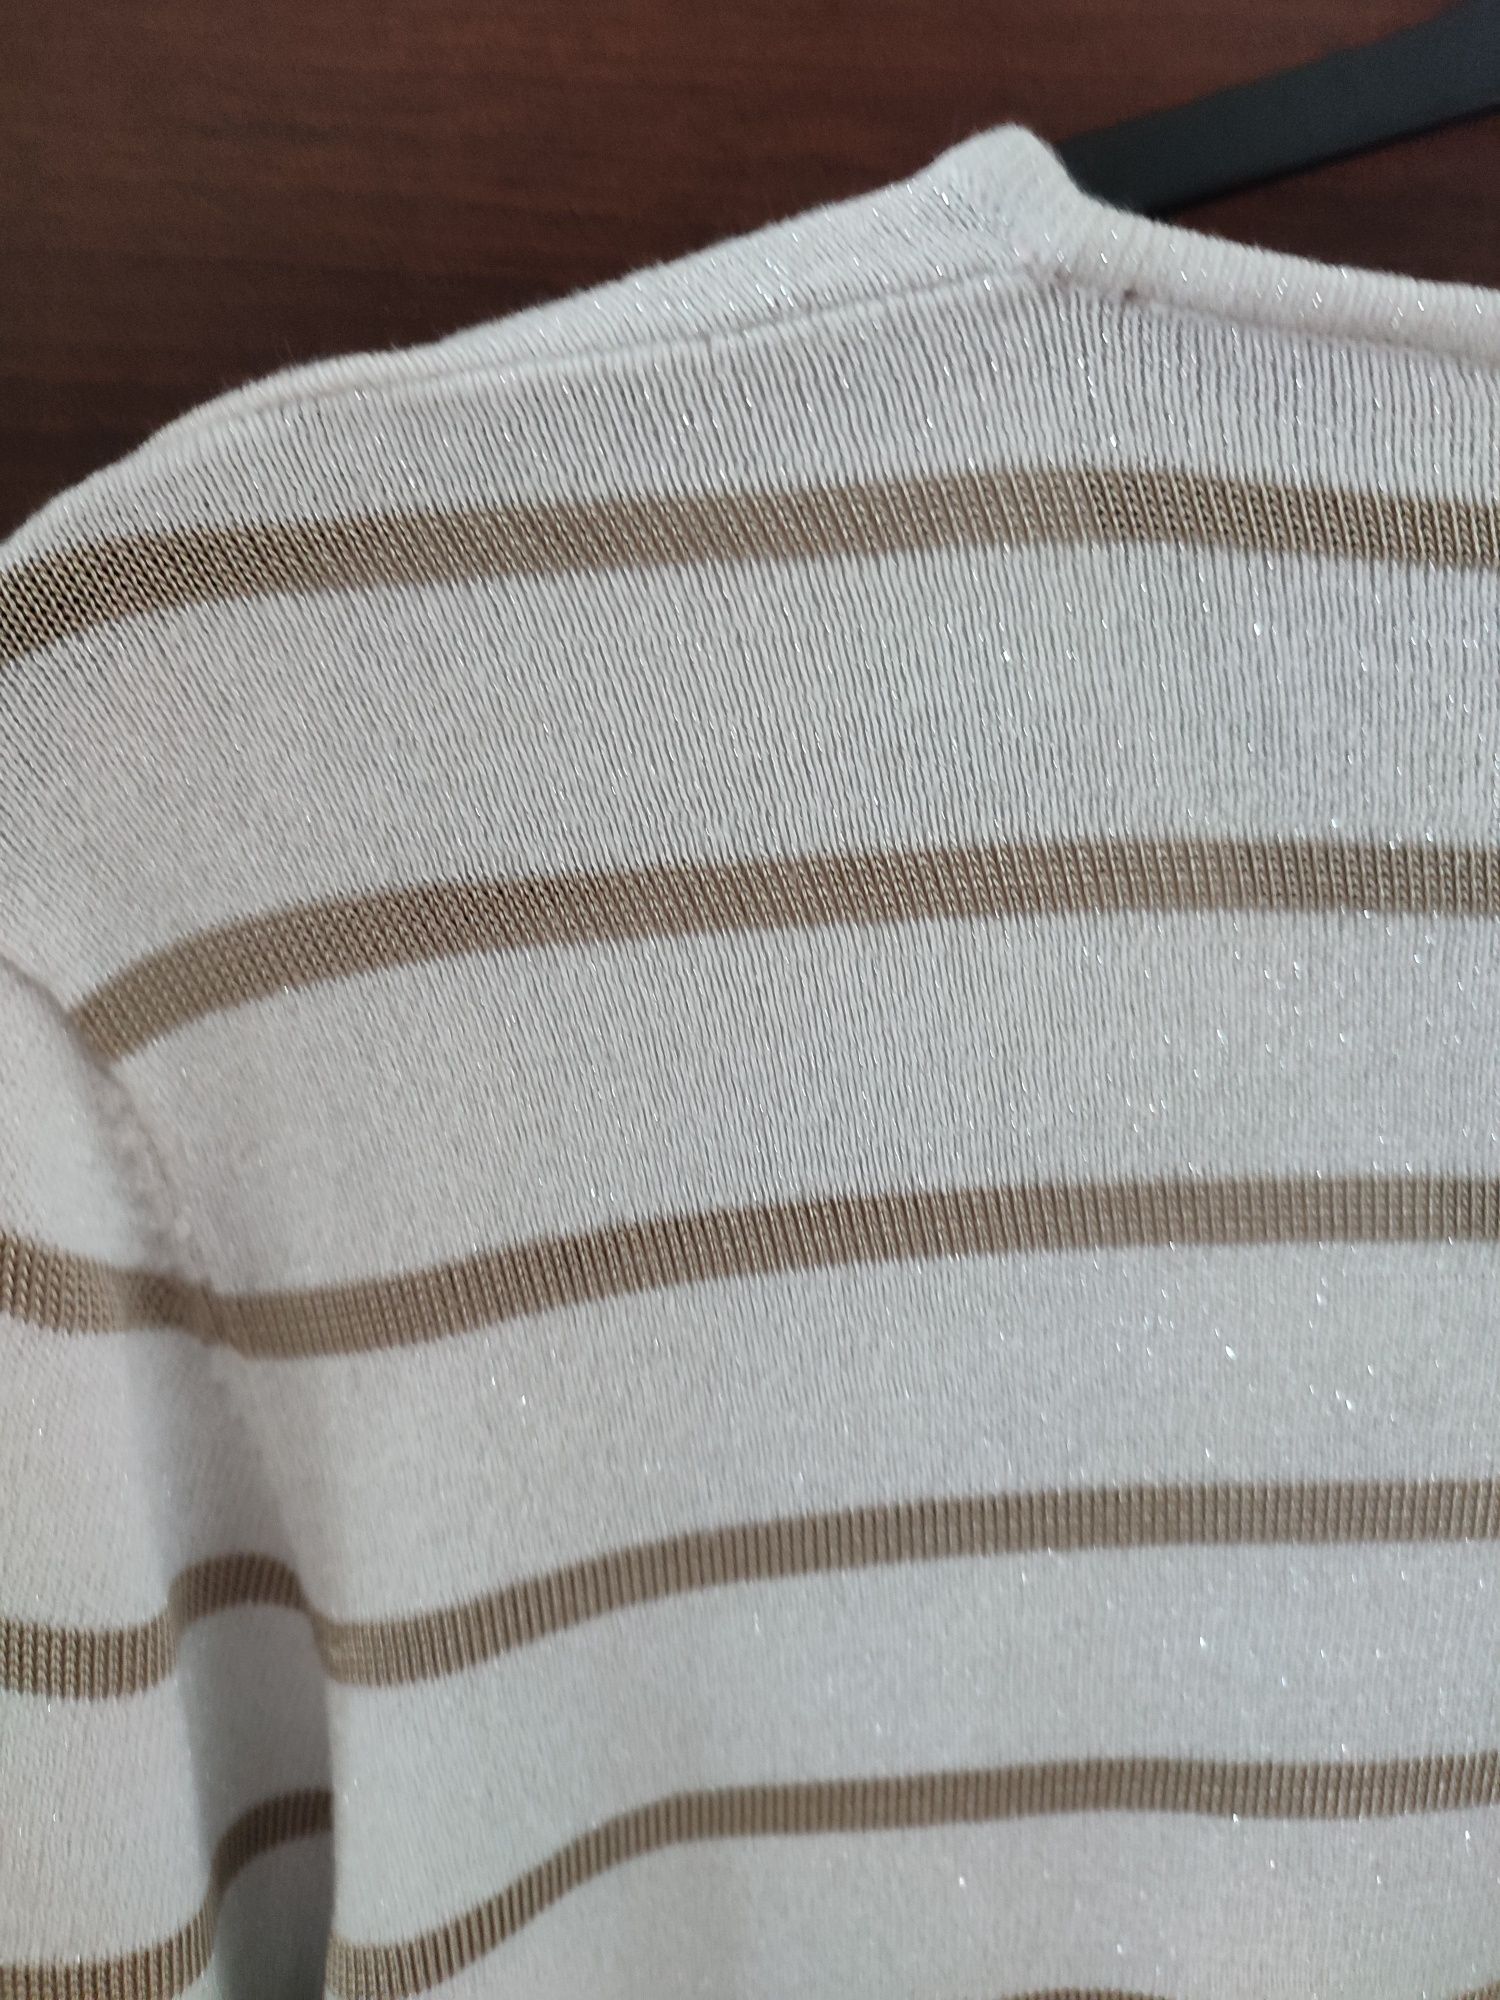 Bluzka damska M, 70% bawełny i 30% akrylu